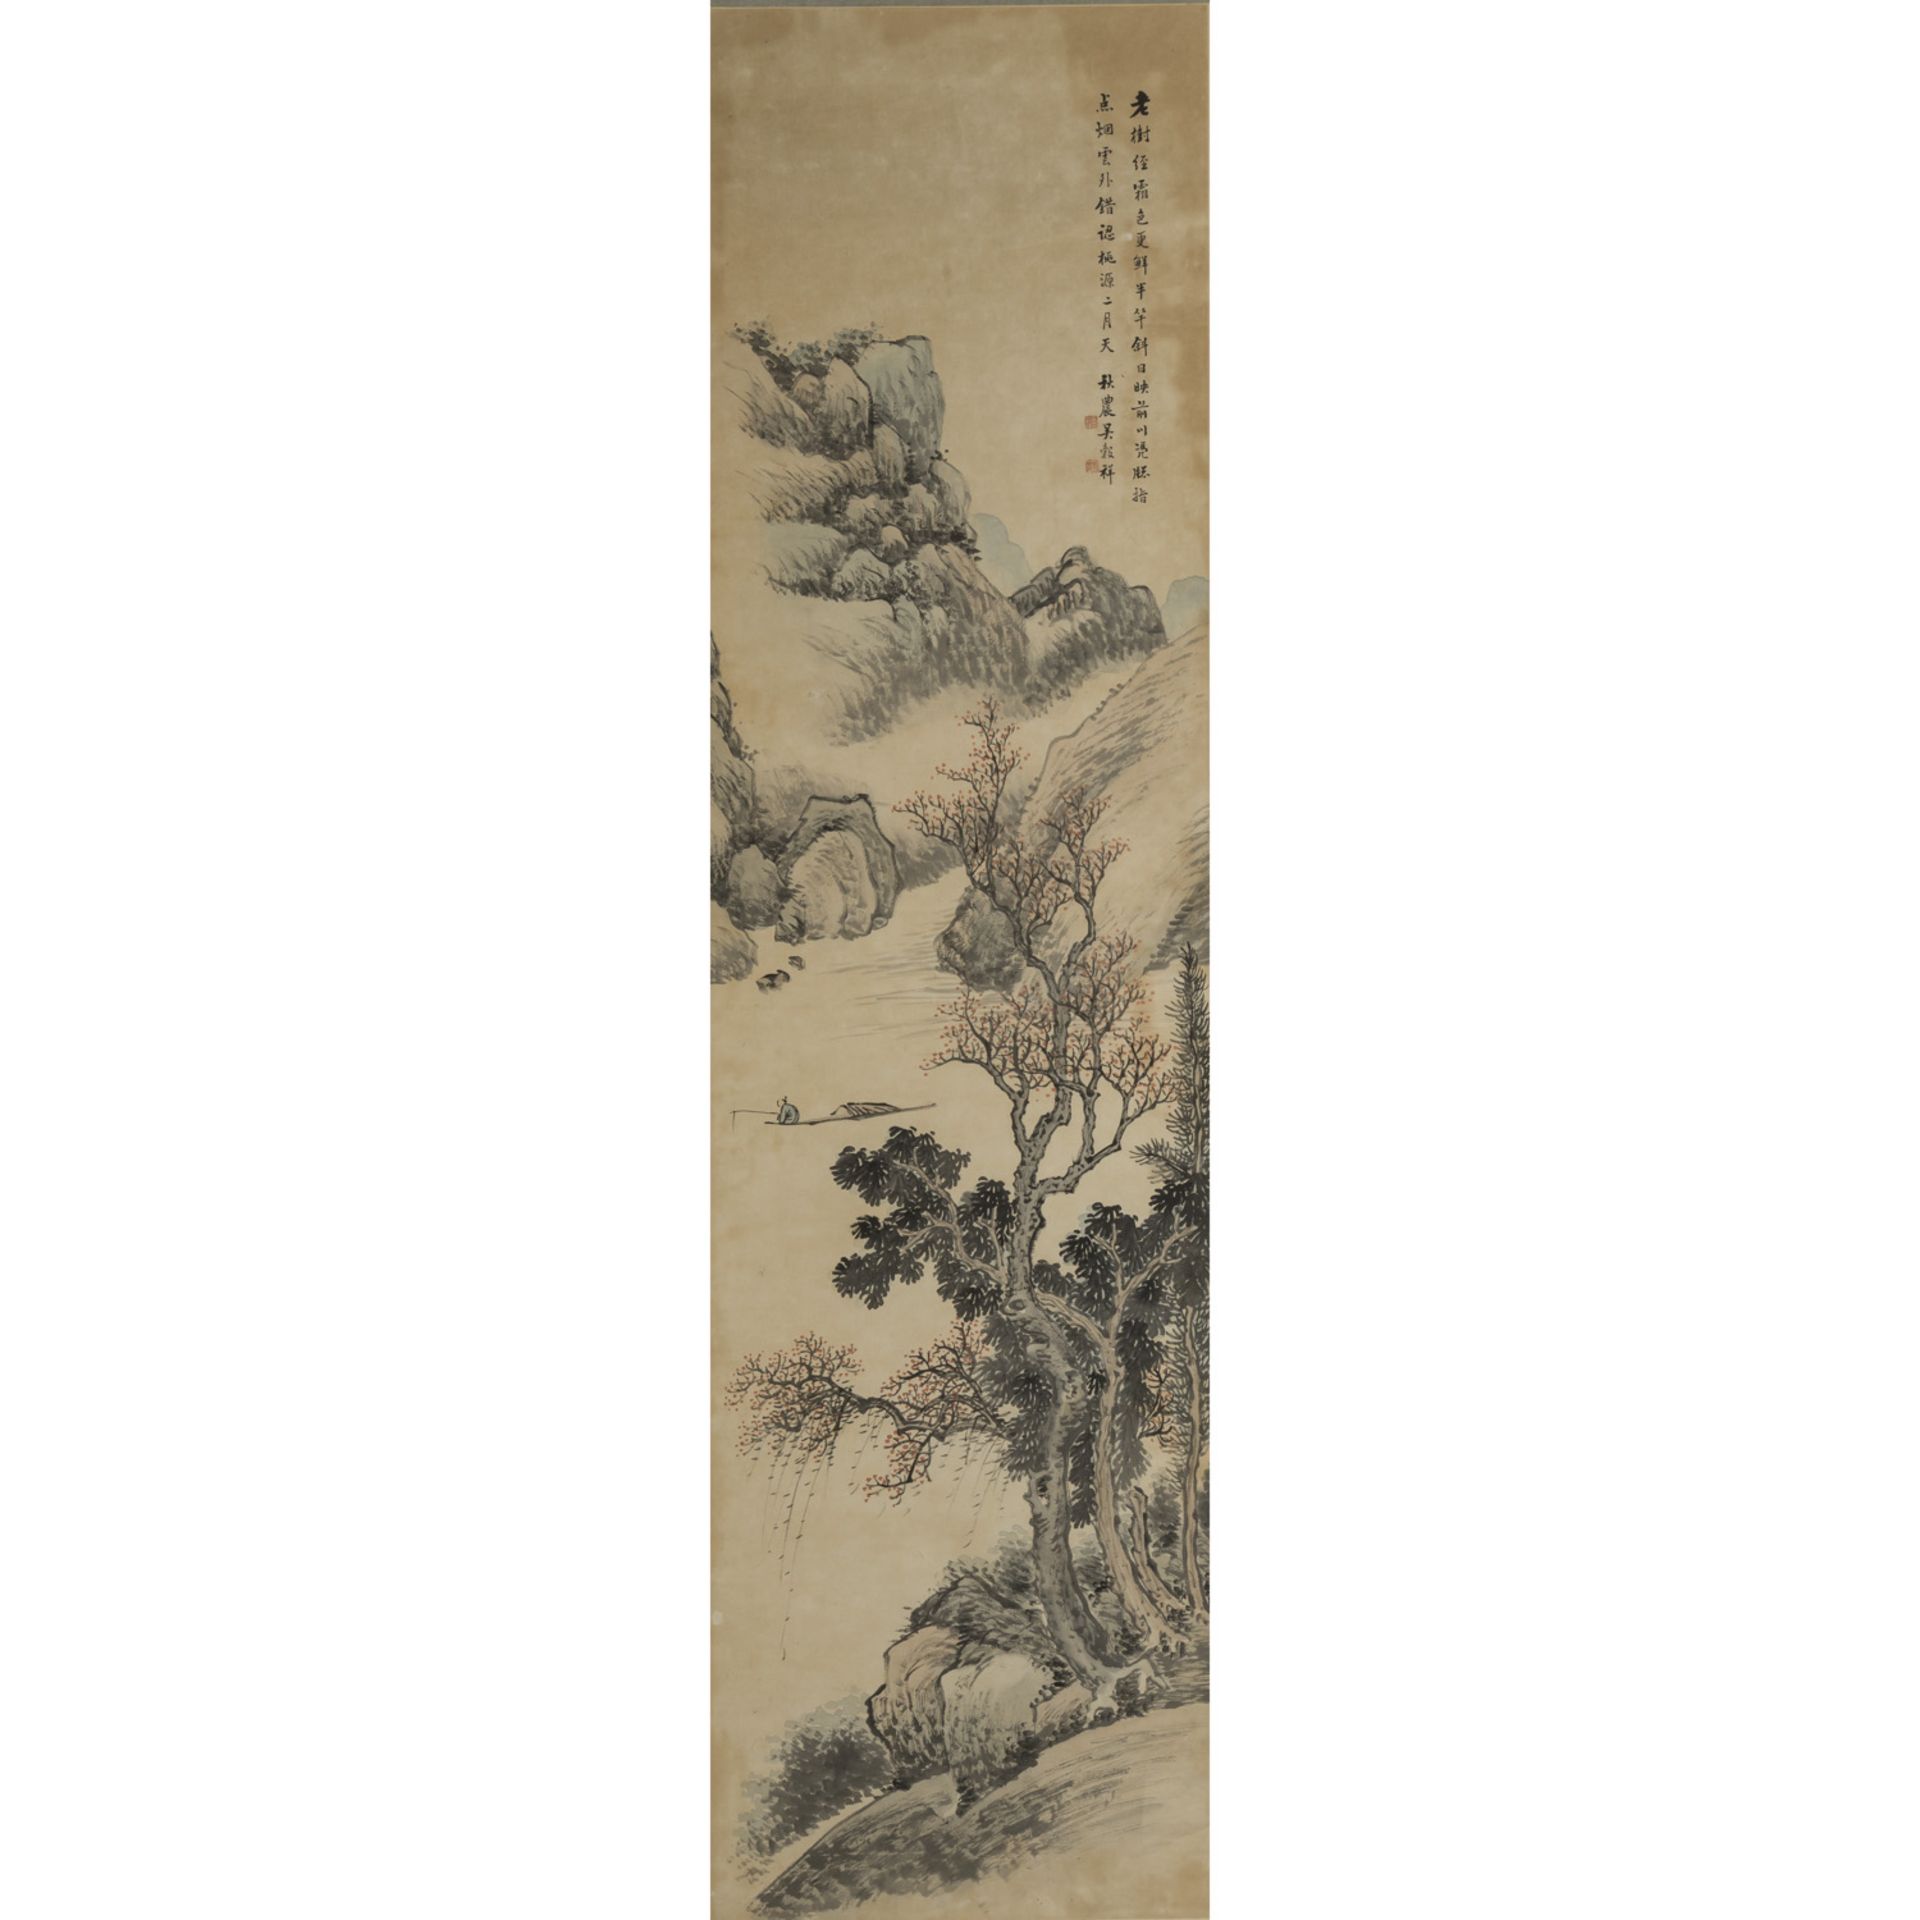 Malerei. CHINA, wohl 19. Jh..Felsige Flusslandschaft mit einsamem Fischer. Tusche und leichte Farben